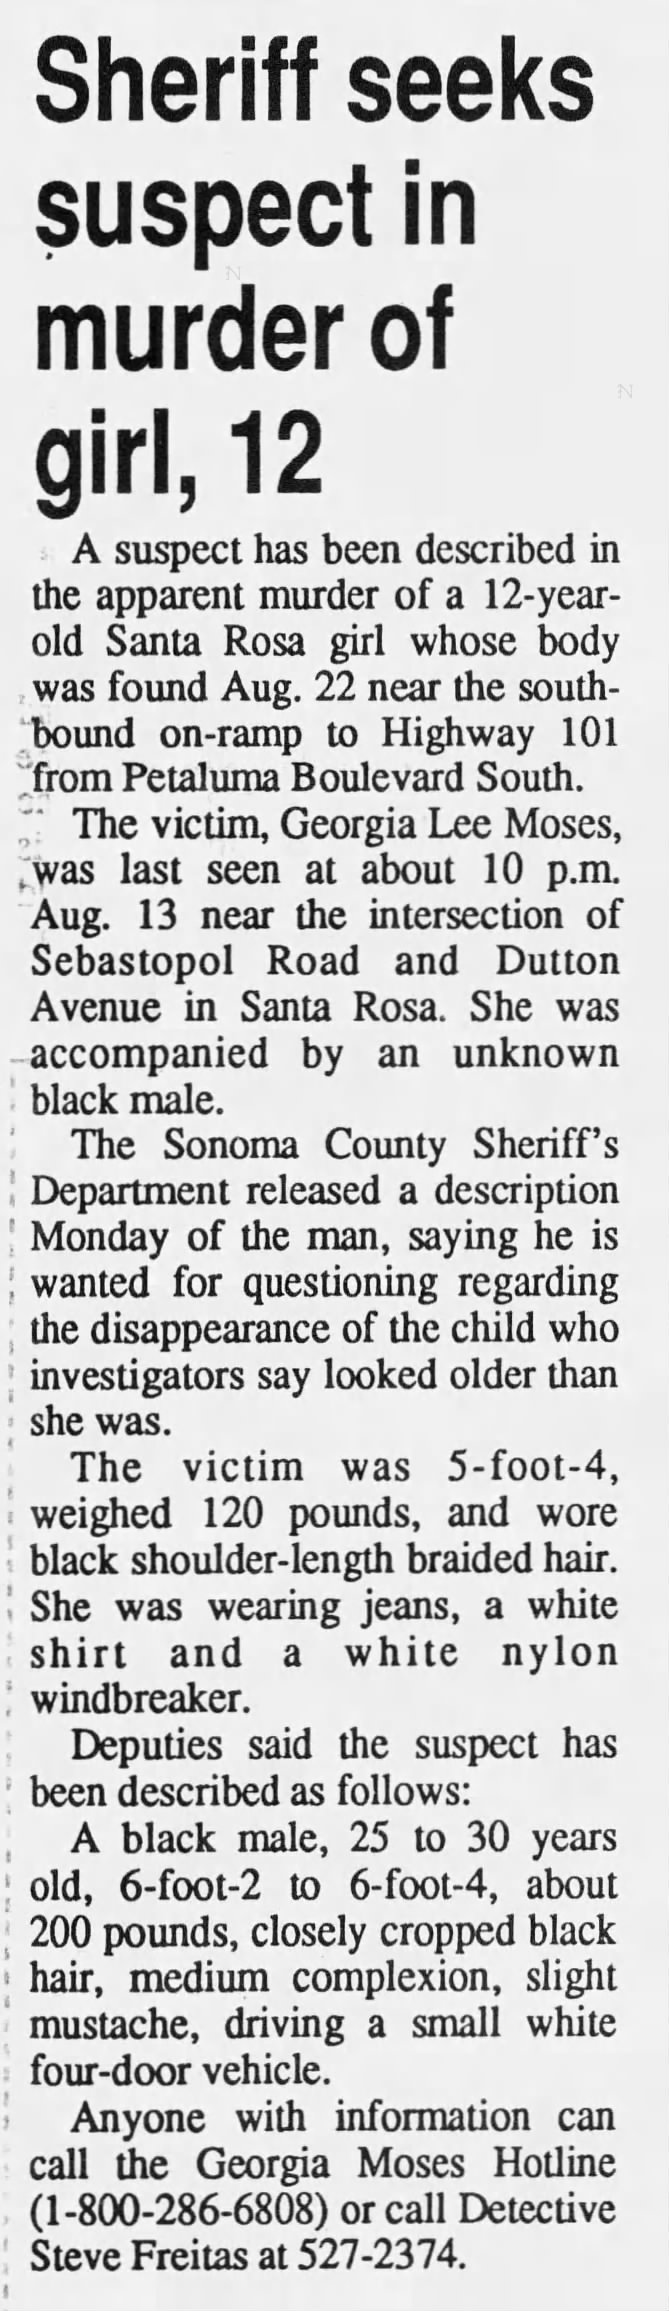 Sheriff seeks suspect in murder of girl, 12